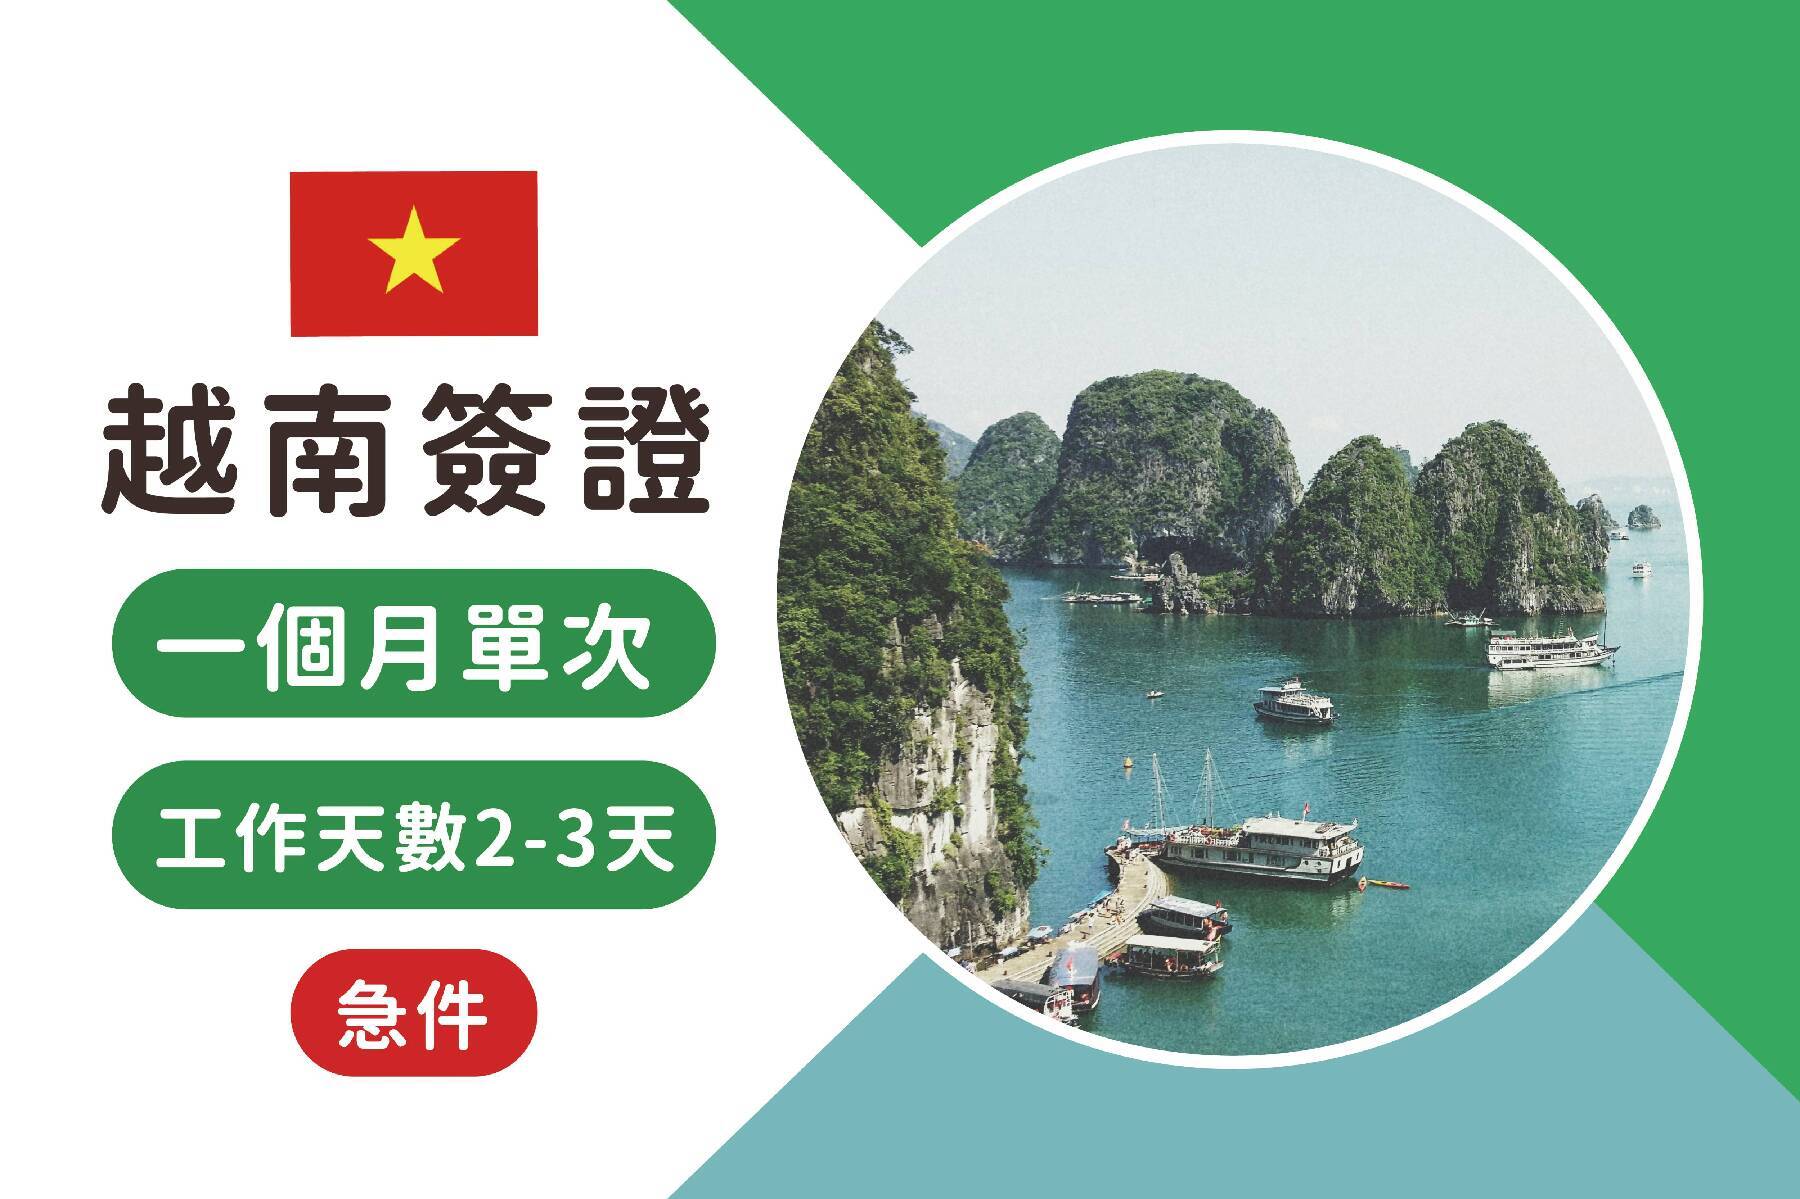 越南簽證-越南觀光電子簽證一個月單次急件(工作天數2-3天)1